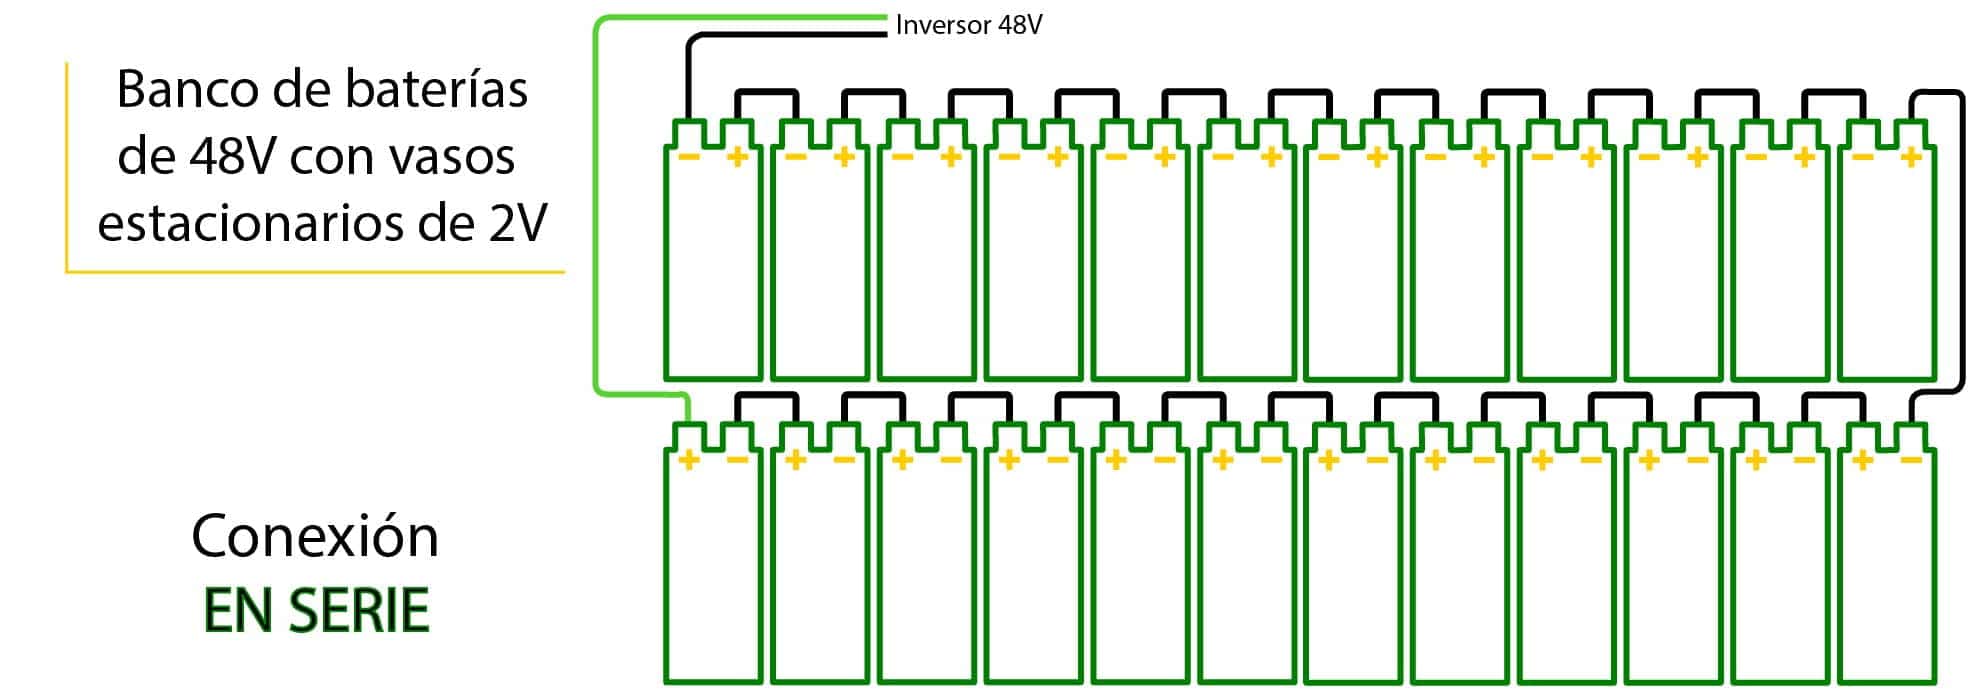 Conexión de vasos de 2V para conseguir banco de baterías de 48V